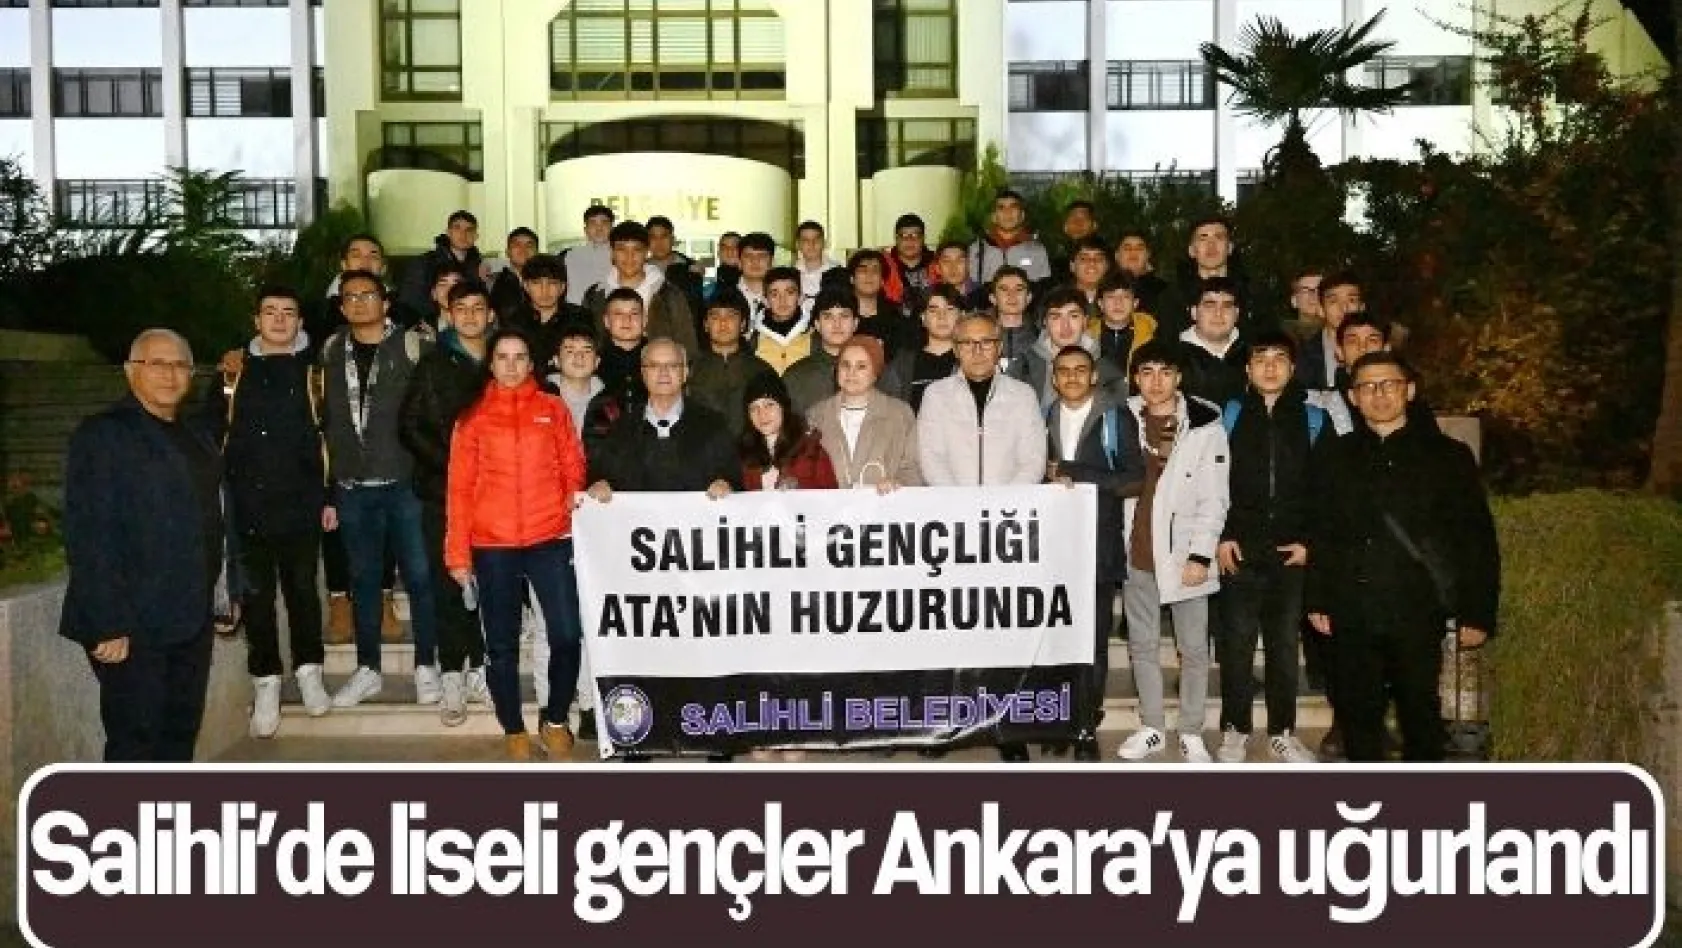 Salihli'de liseli gençler Ankara'ya uğurlandı